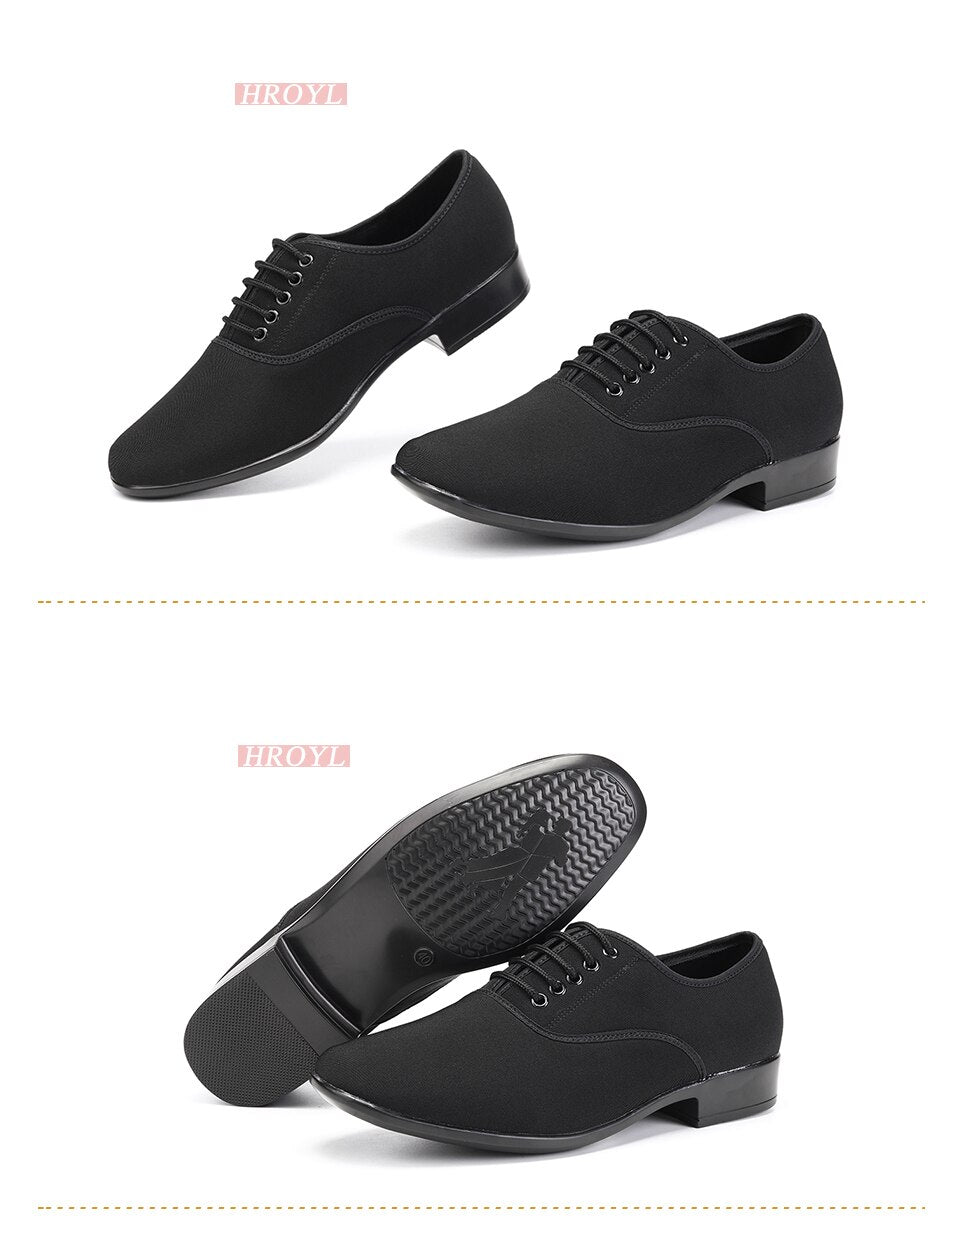 Chaussures danse hommes en PU coloris noir